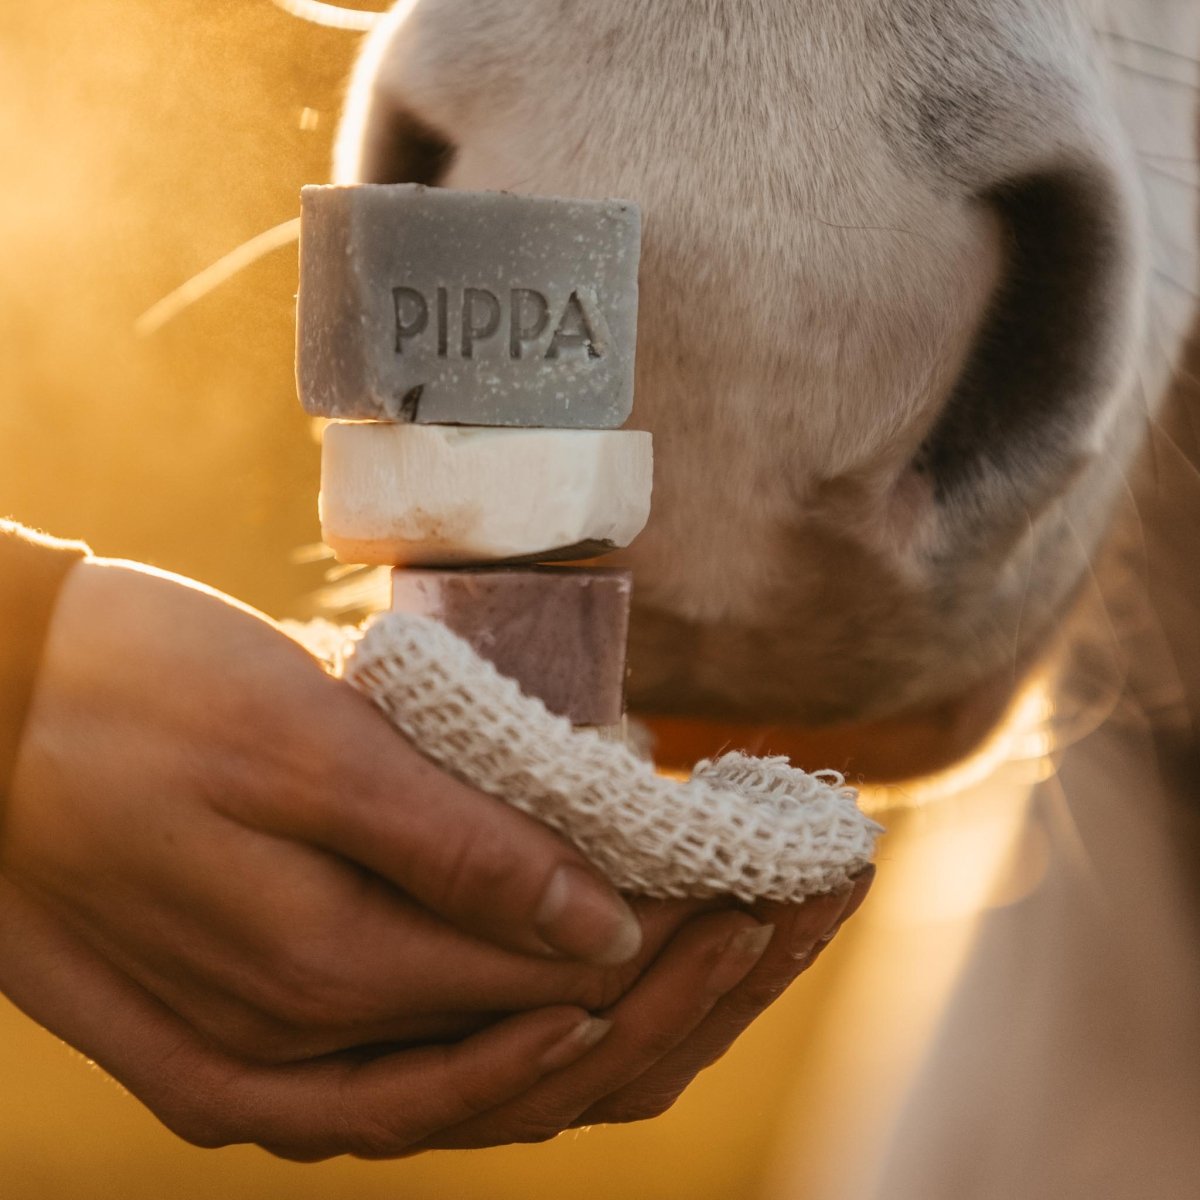 PIPPA Paardenshampoo Proefpakket - 'Winter' Edition - PIPPA Equestrian Soap - Shampoo en crèmespoeling voor huisdieren